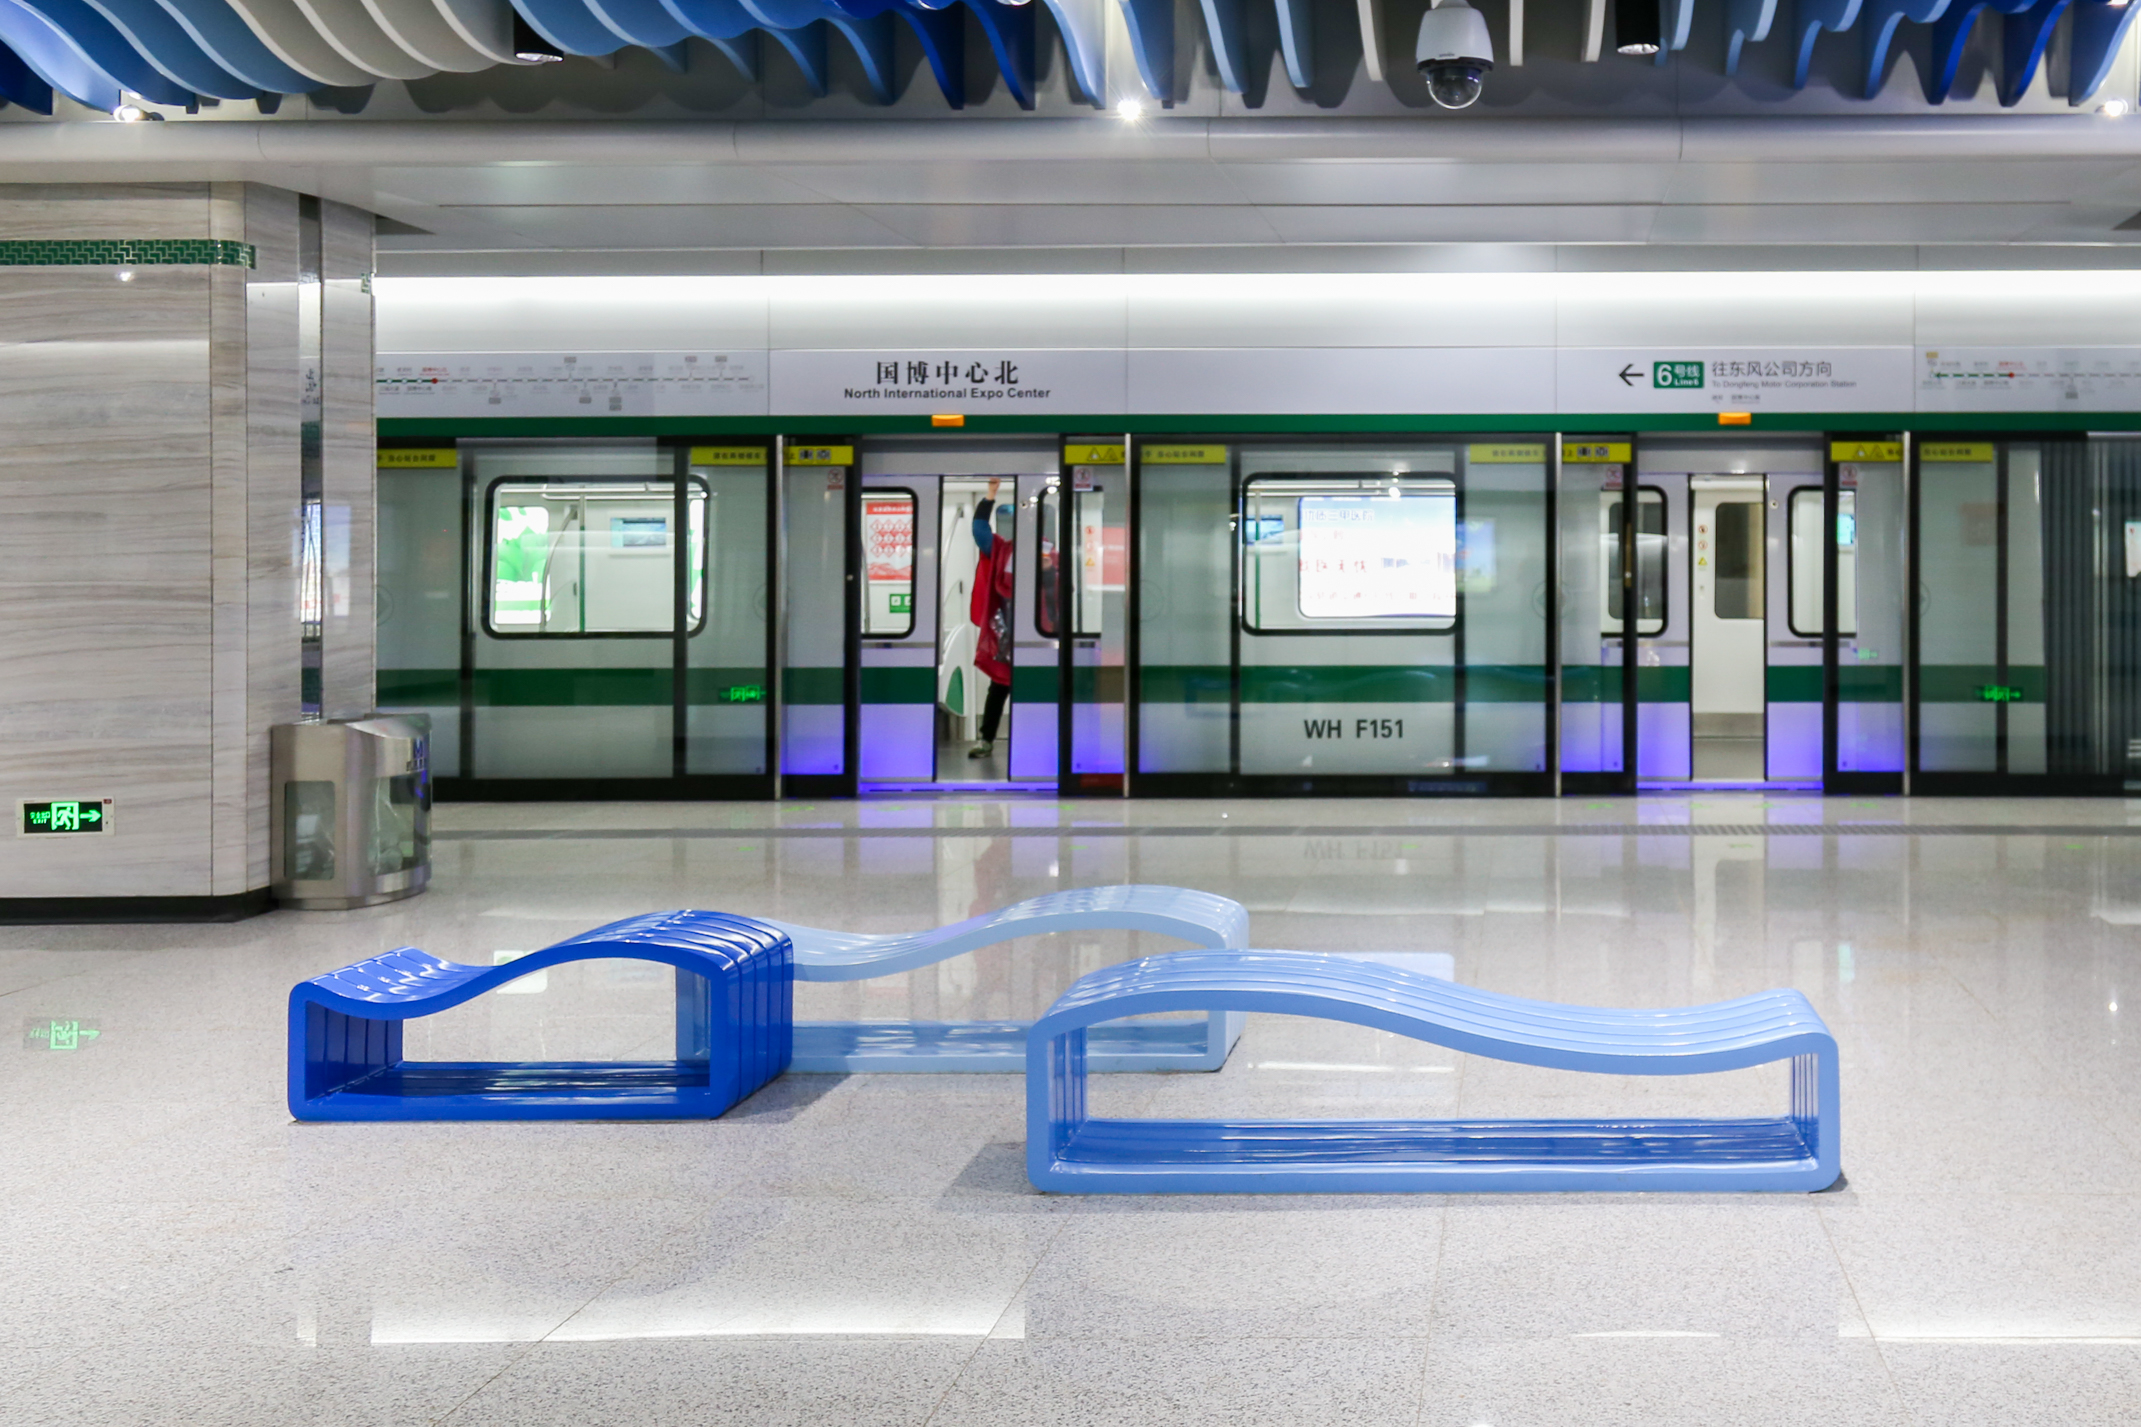 武汉地铁6号线,一条高颜值的艺术地铁